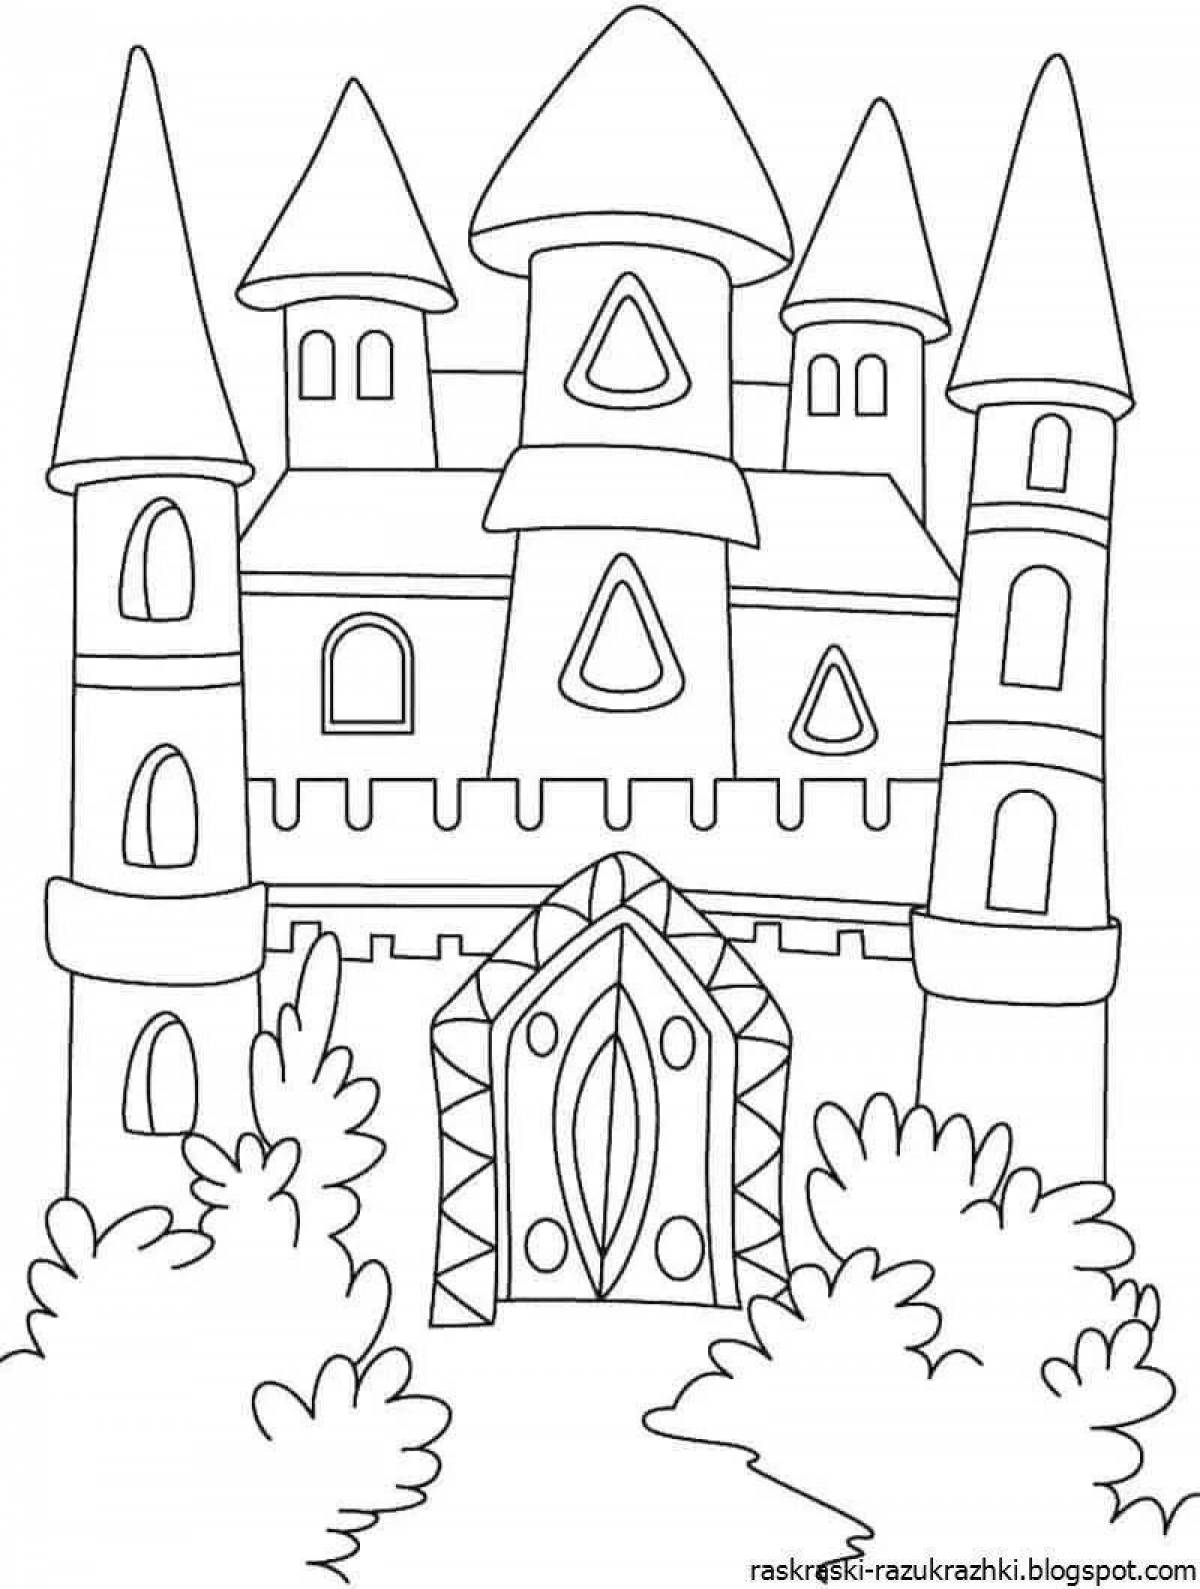 Coloring book big magic castle